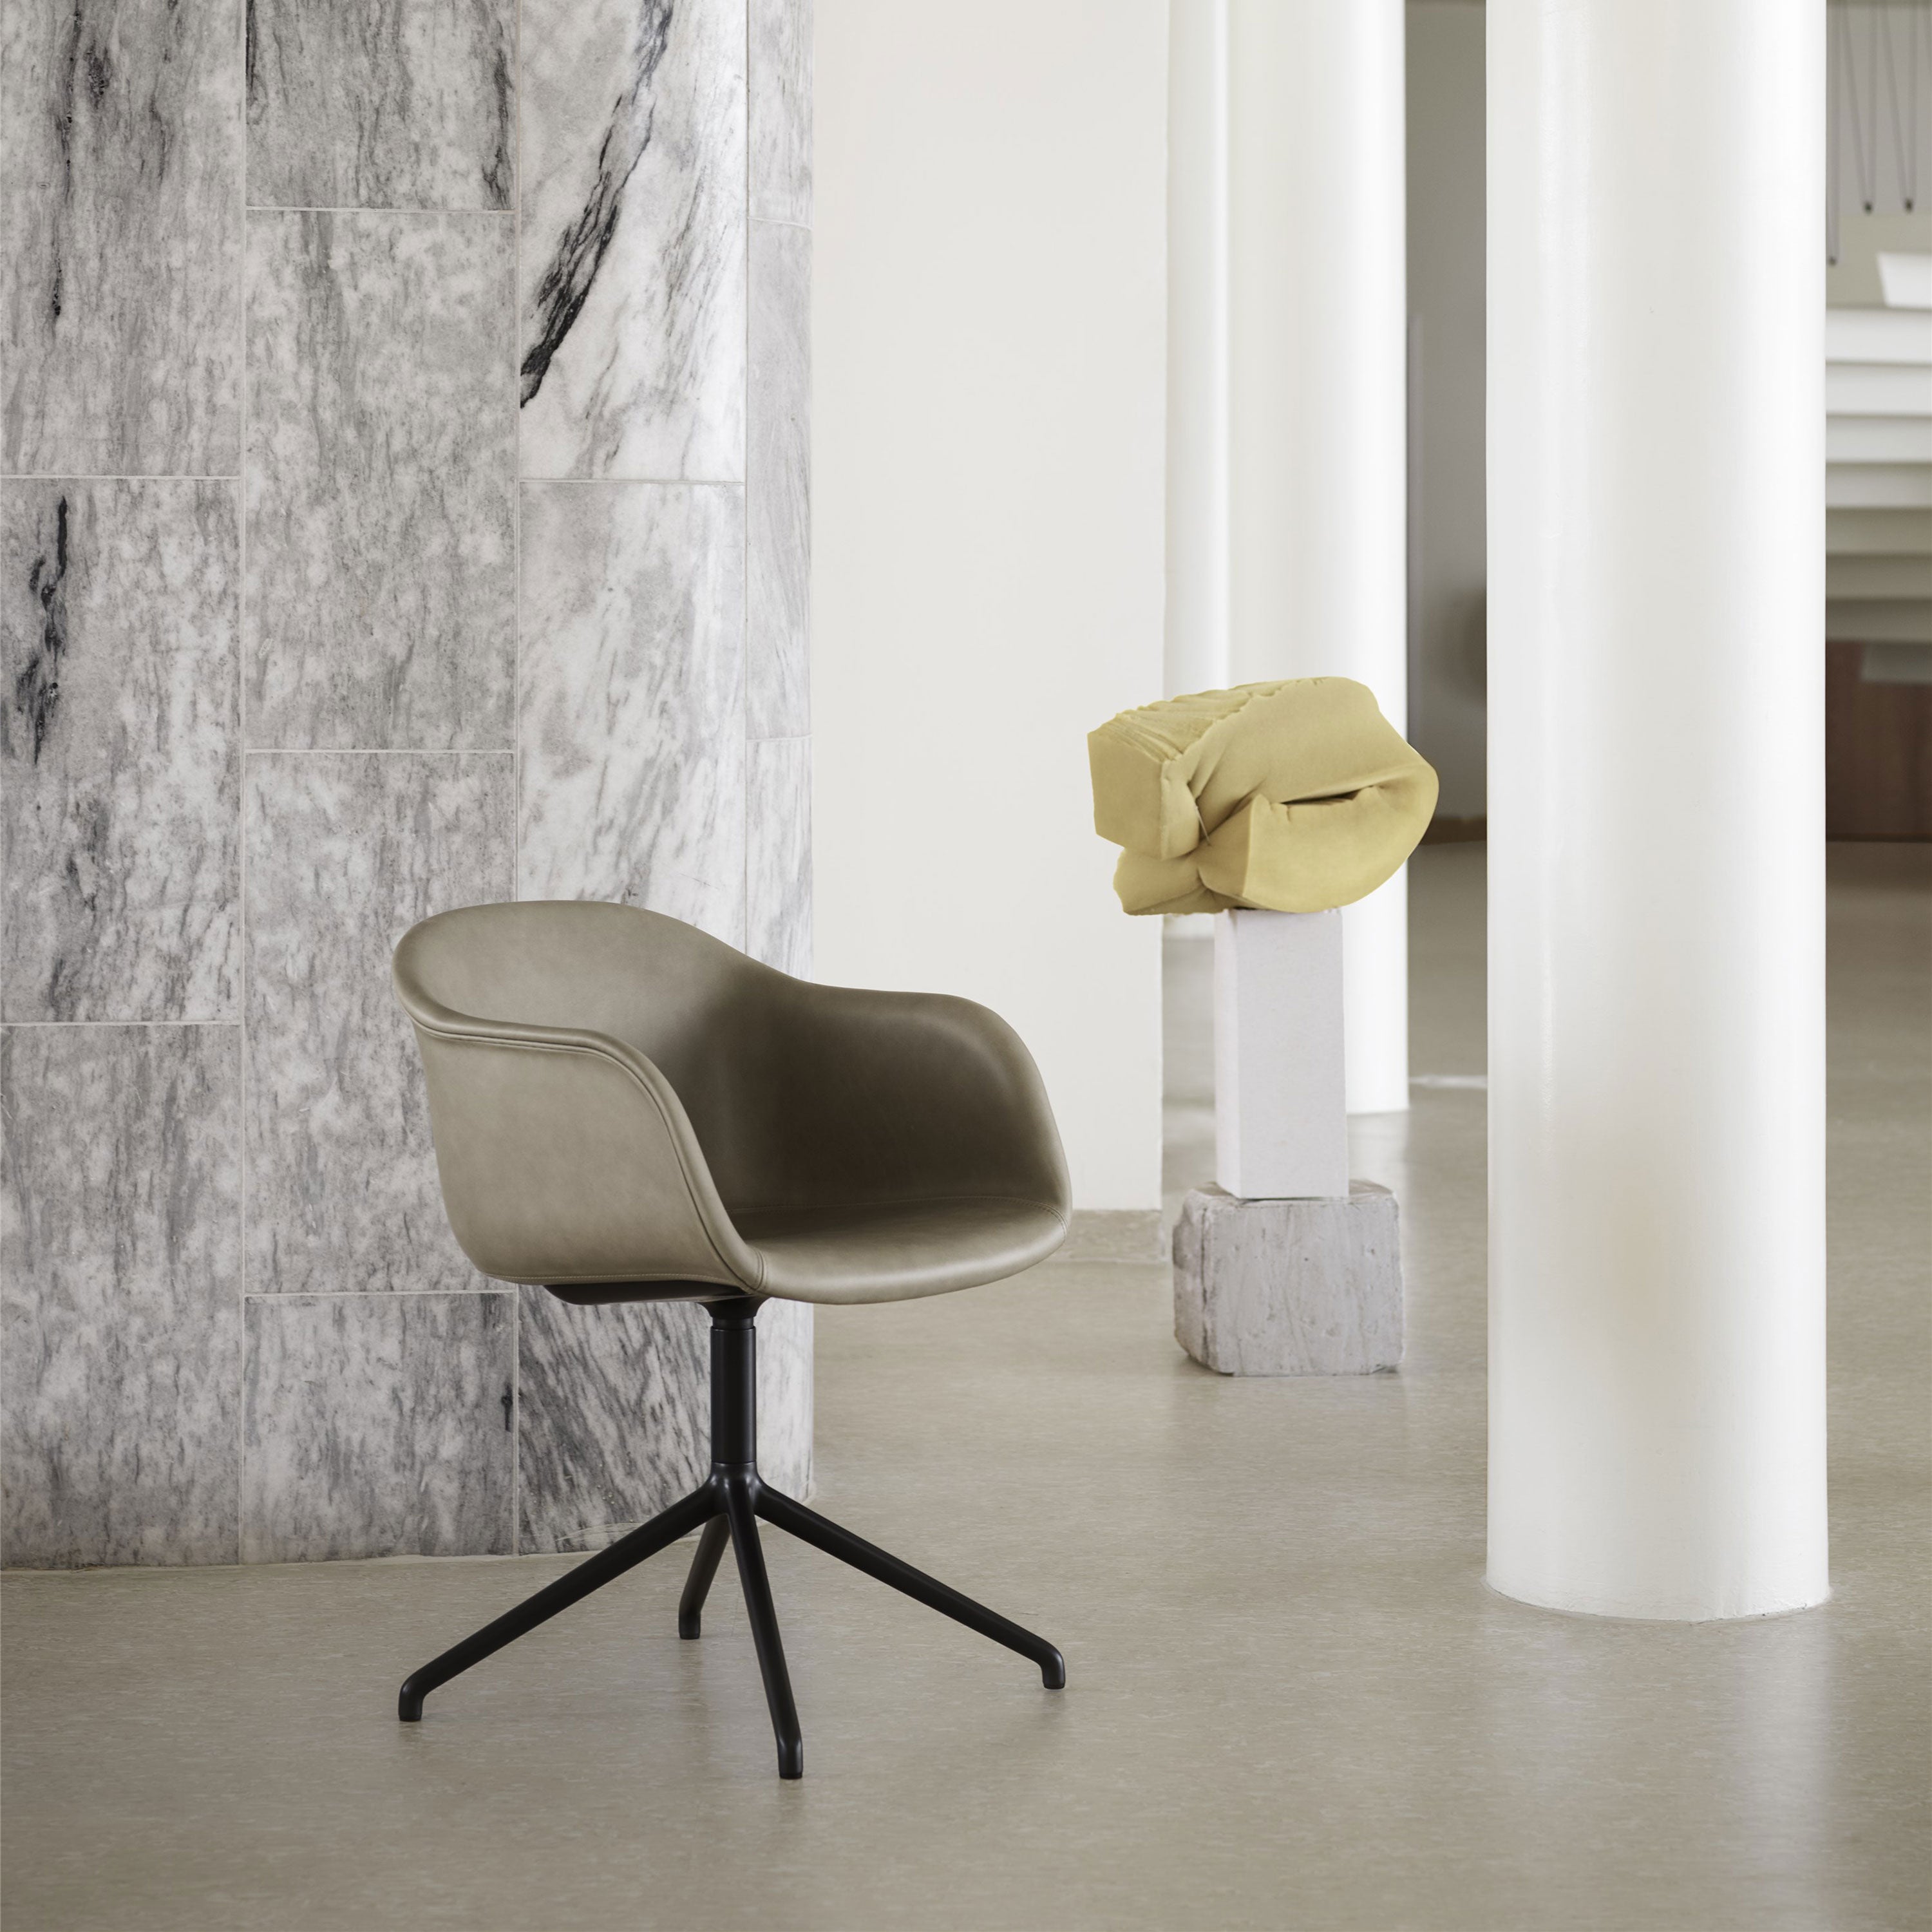 Fiber Armchair: Swivel Base + Recycled Shell + Upholstered